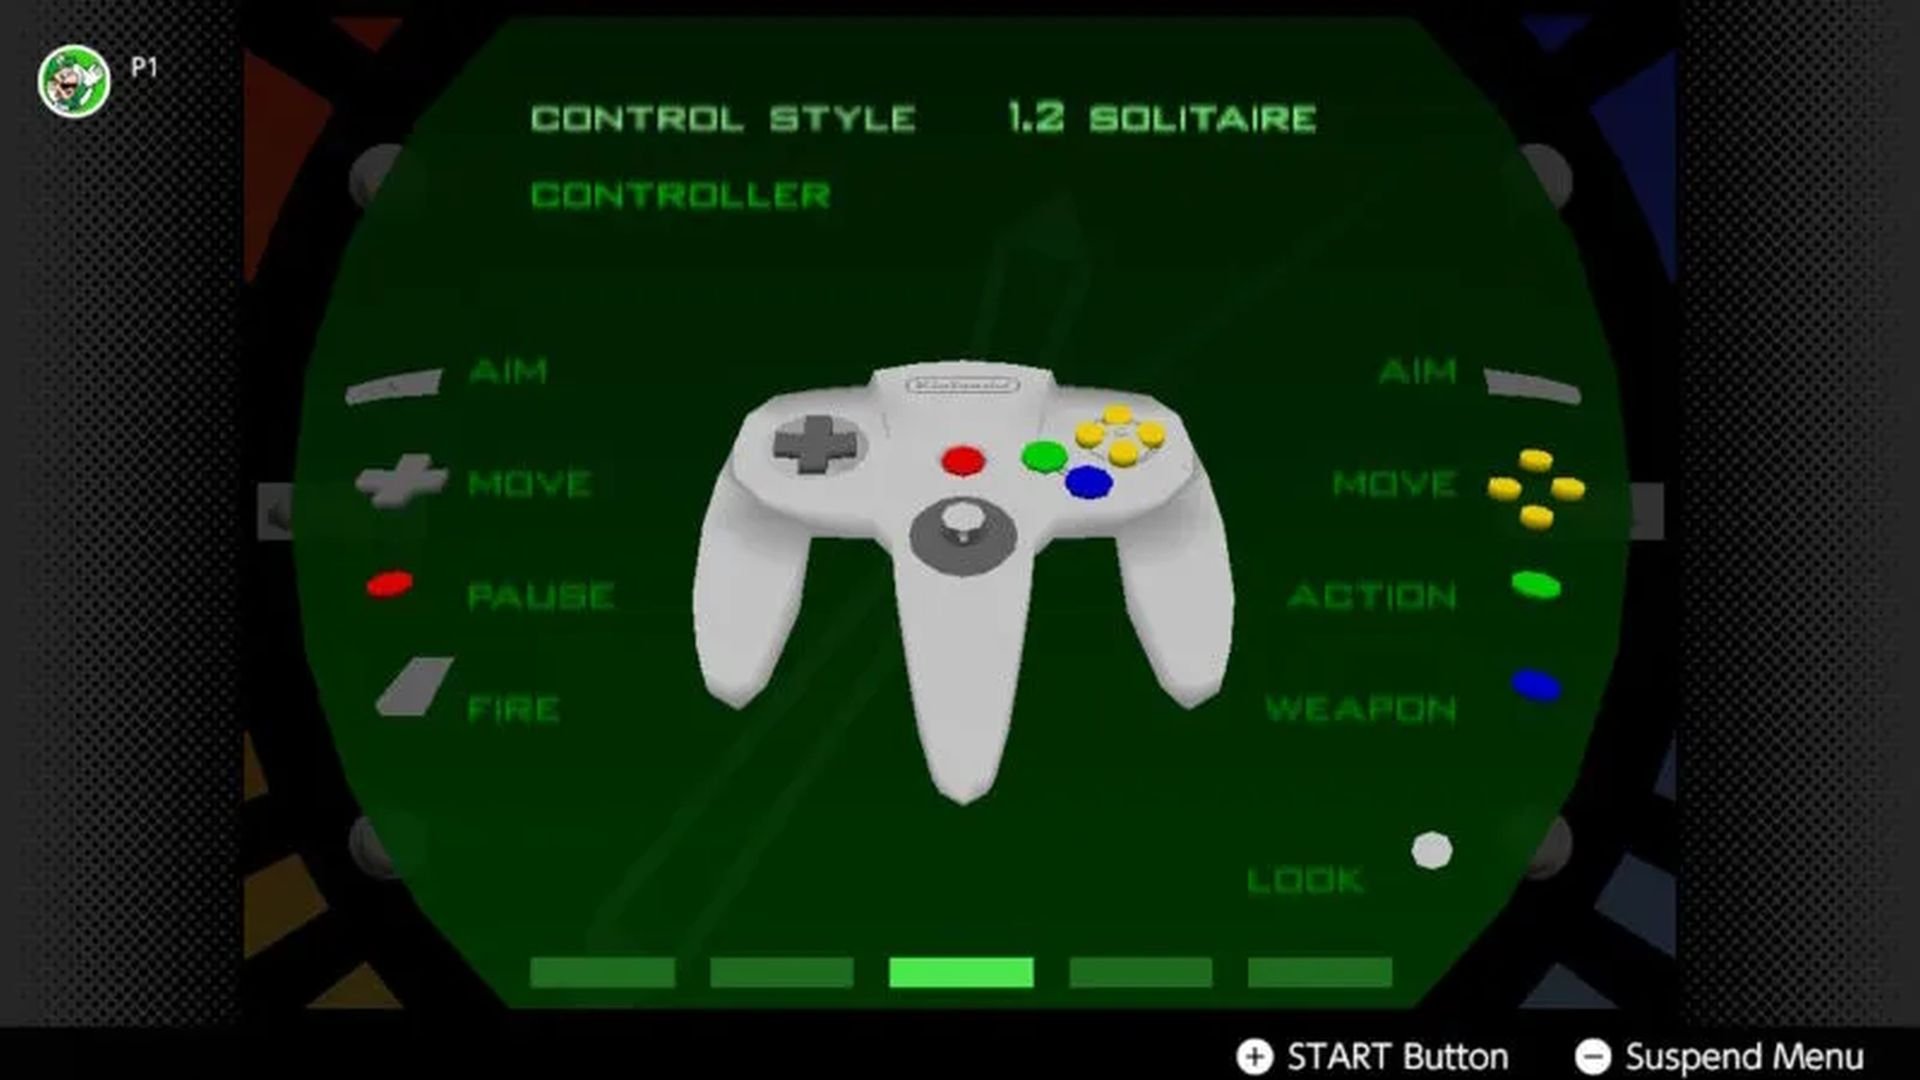 N64 Switch Online - Goldeneye 007: 4-Player Online Matches 